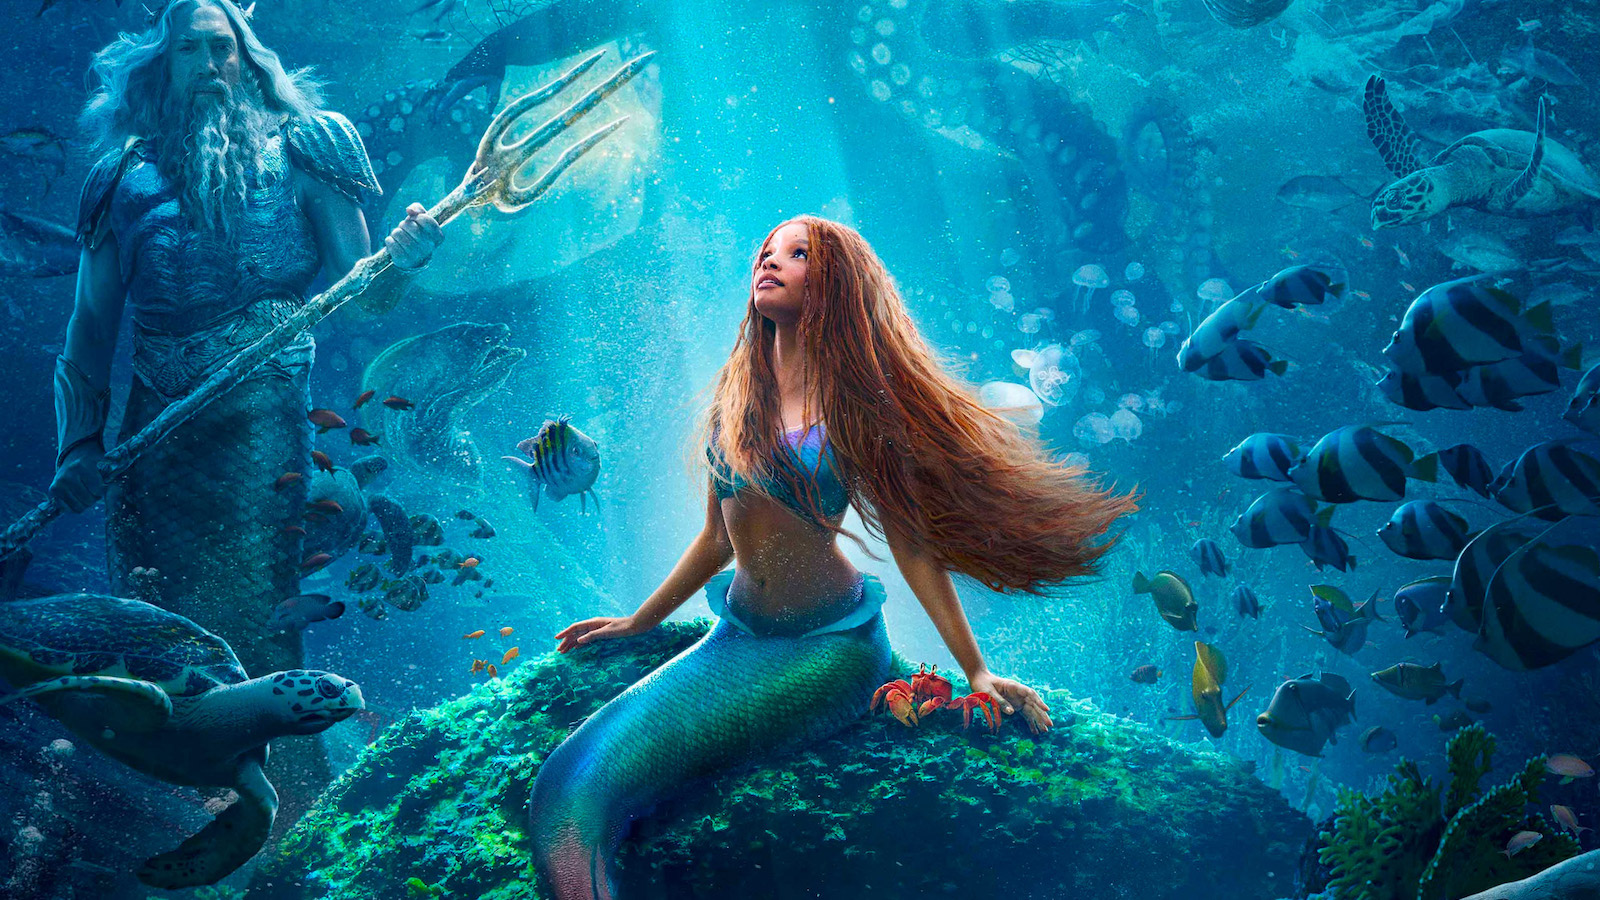 La Sirenetta: 5 curiosità sul live action su Disney+